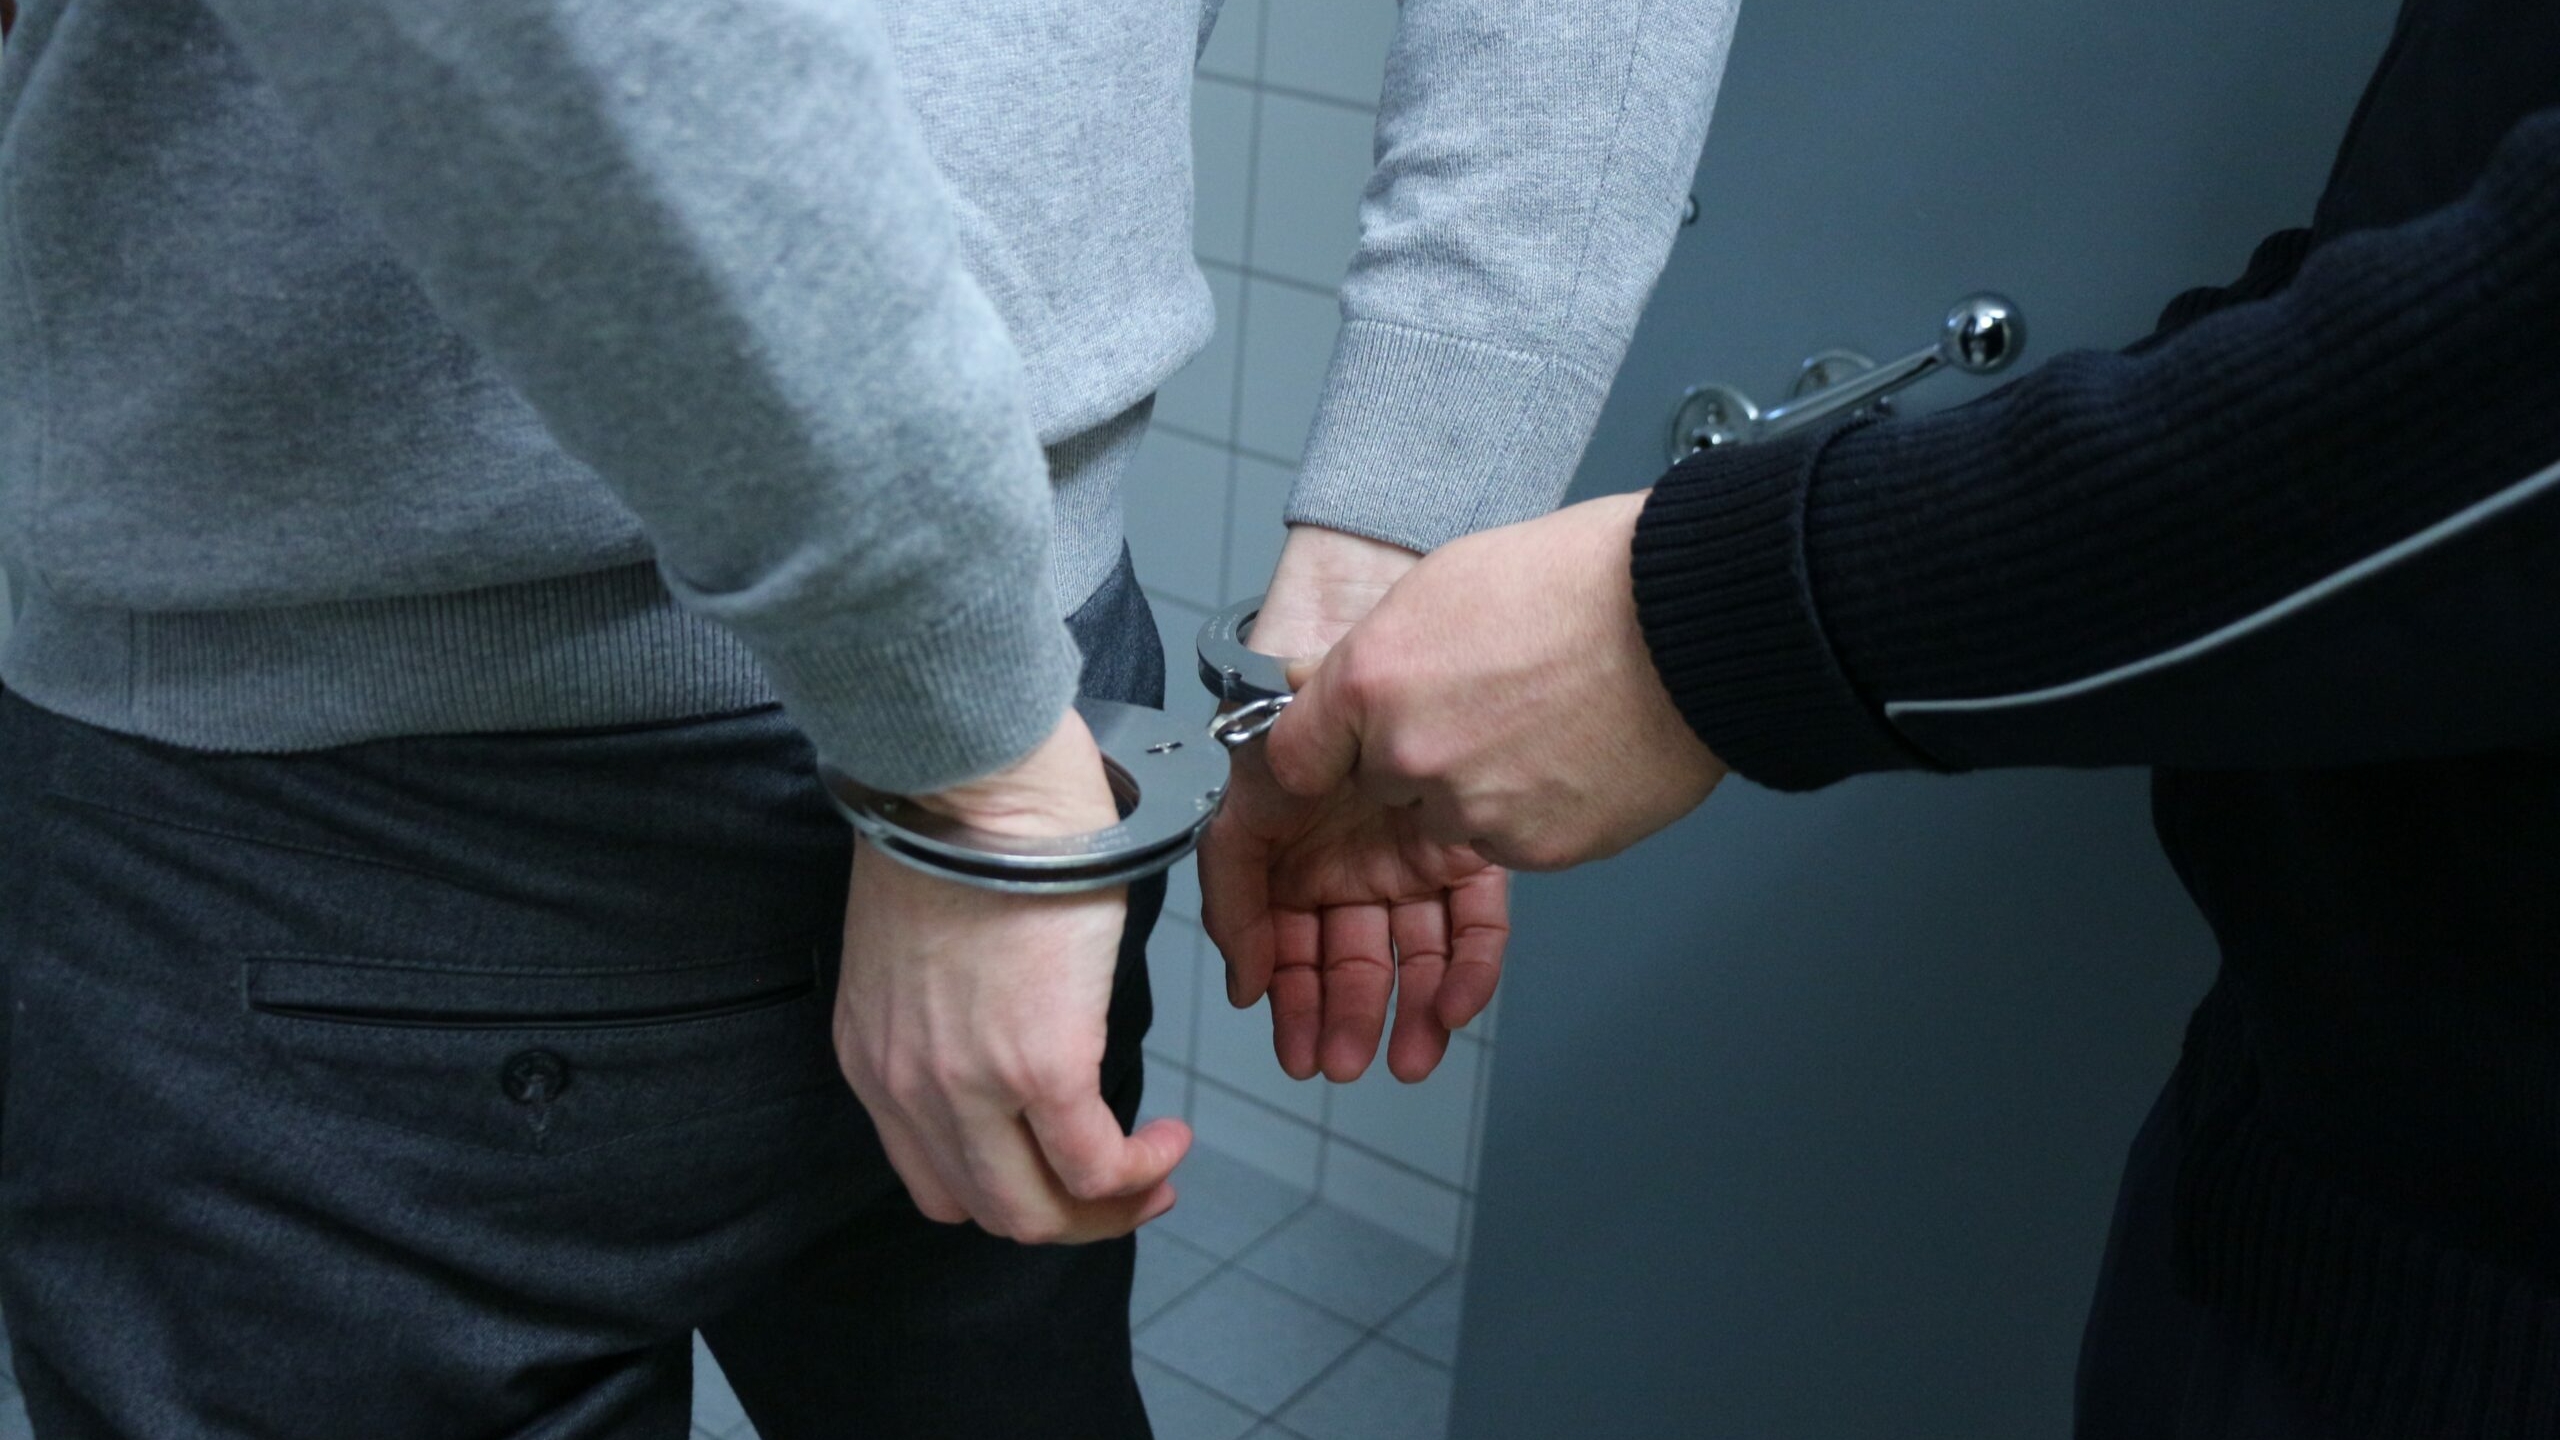 Подозреваемый в расчленении женщины в Шушарах задержан